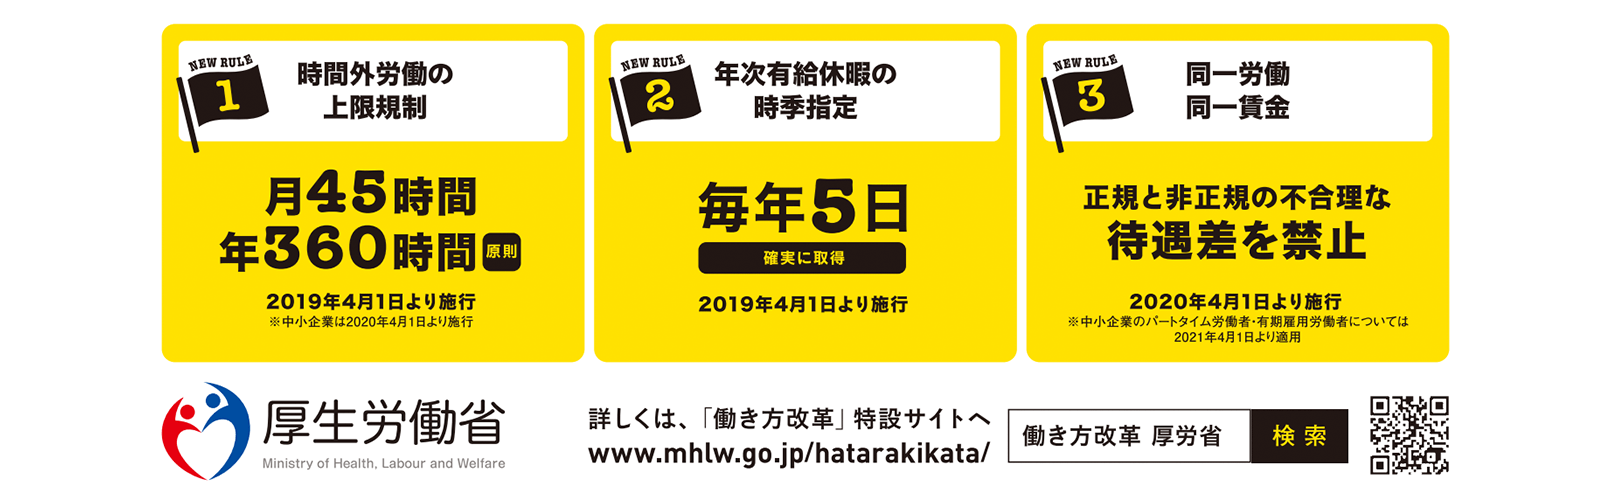 厚生労働省　働き方改革特設サイト https://www.mhlw.go.jp/hatarakikata/ 2020年1月20日最終アクセス